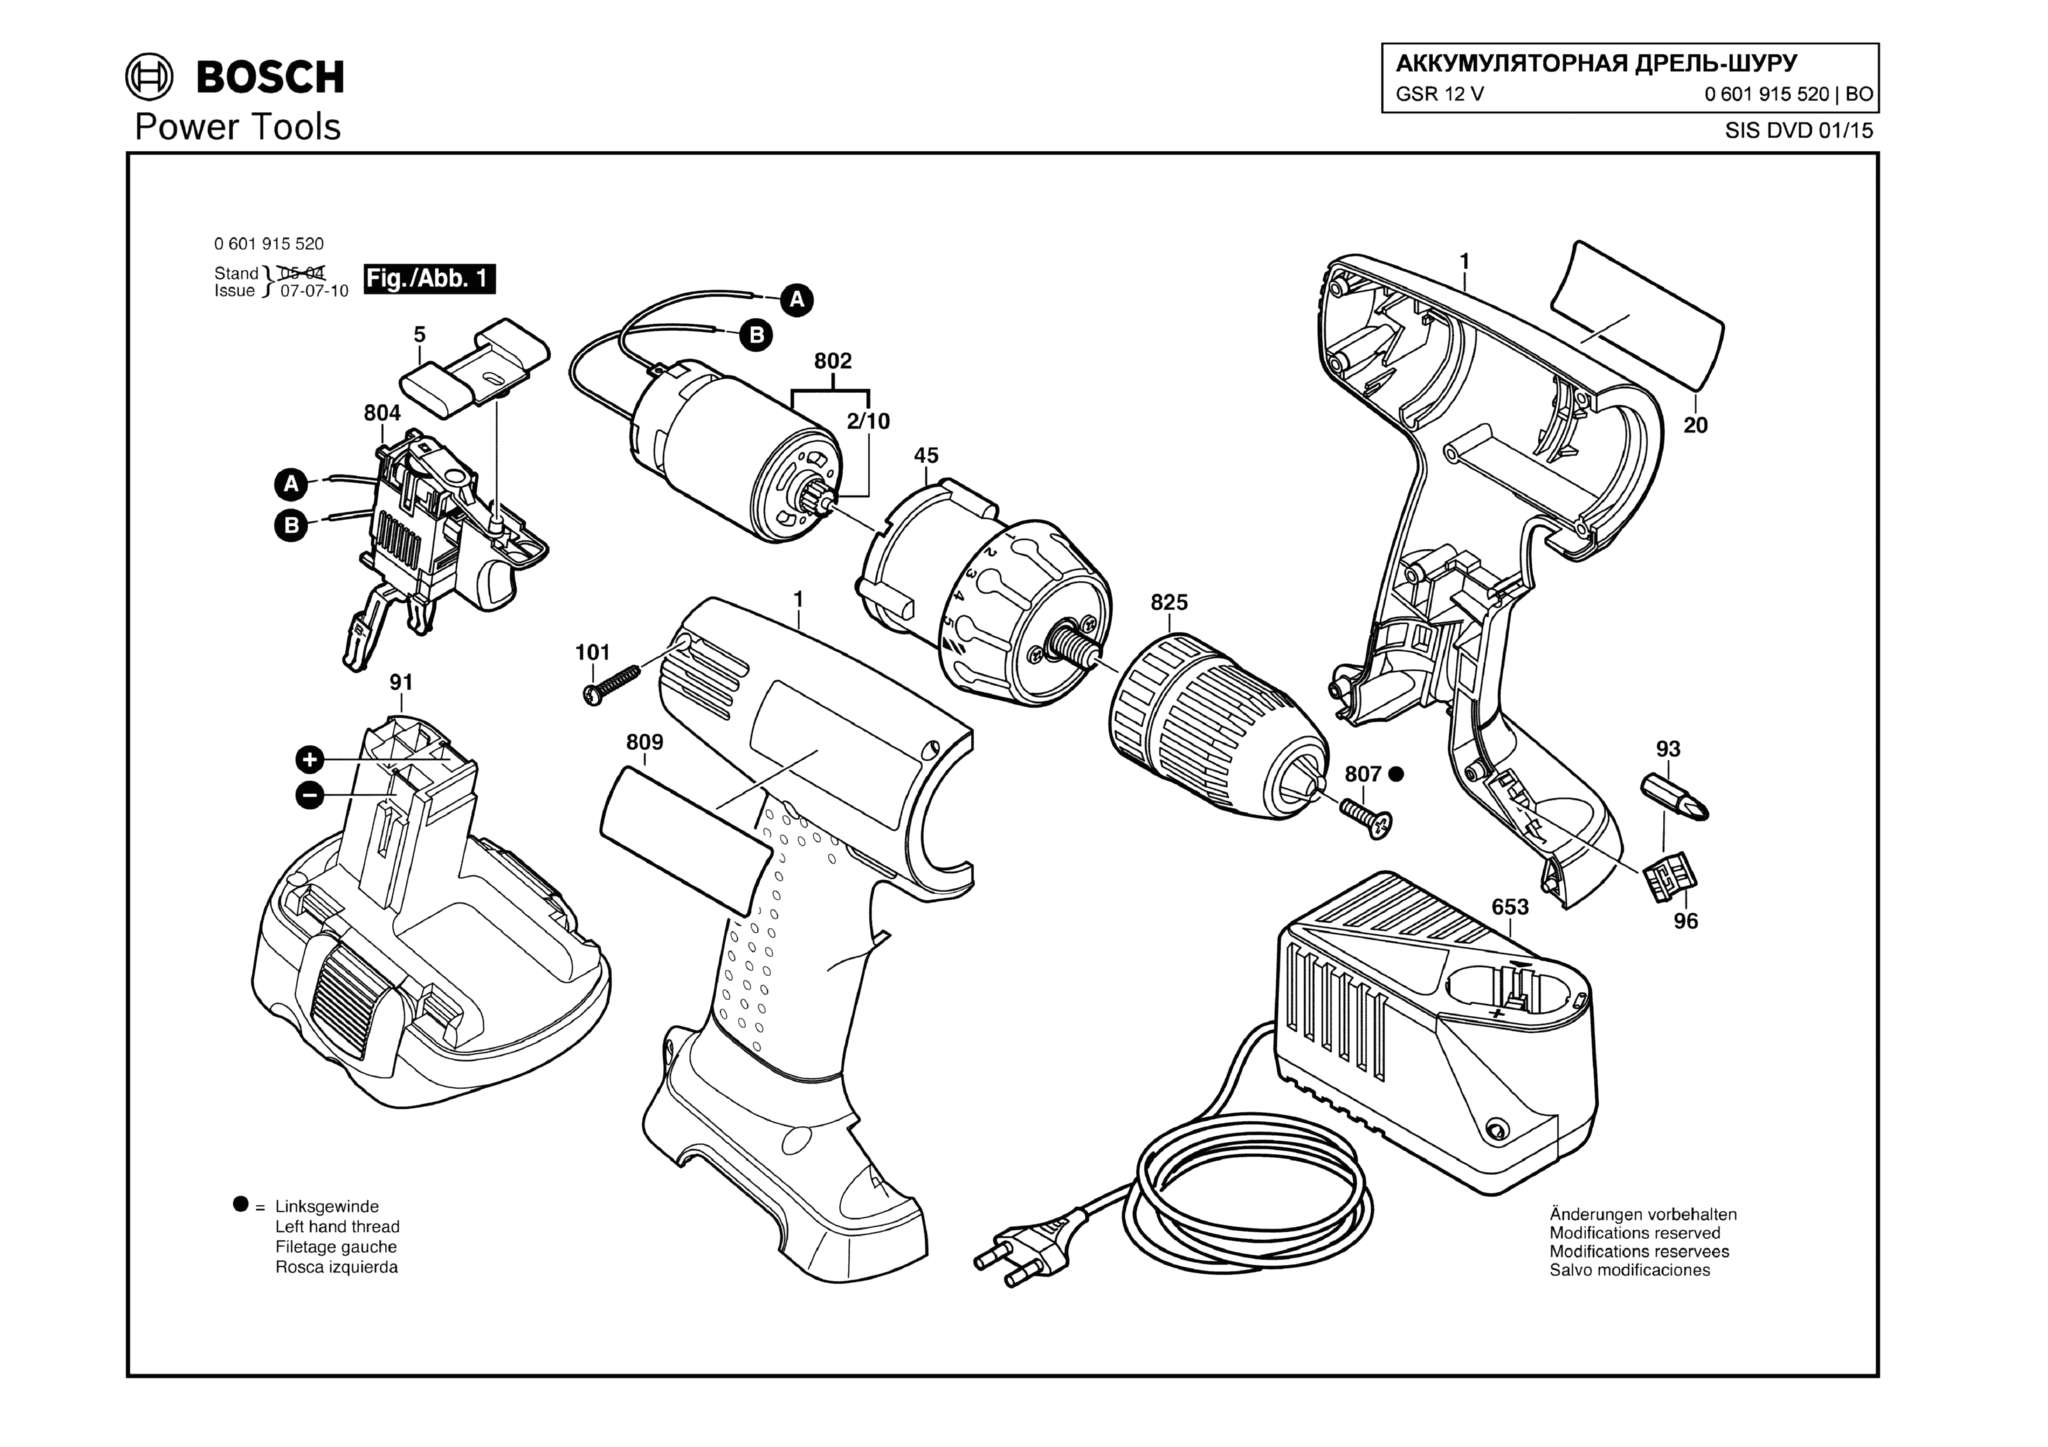 Запчасти, схема и деталировка Bosch GSR 12 V (ТИП 0601915520)